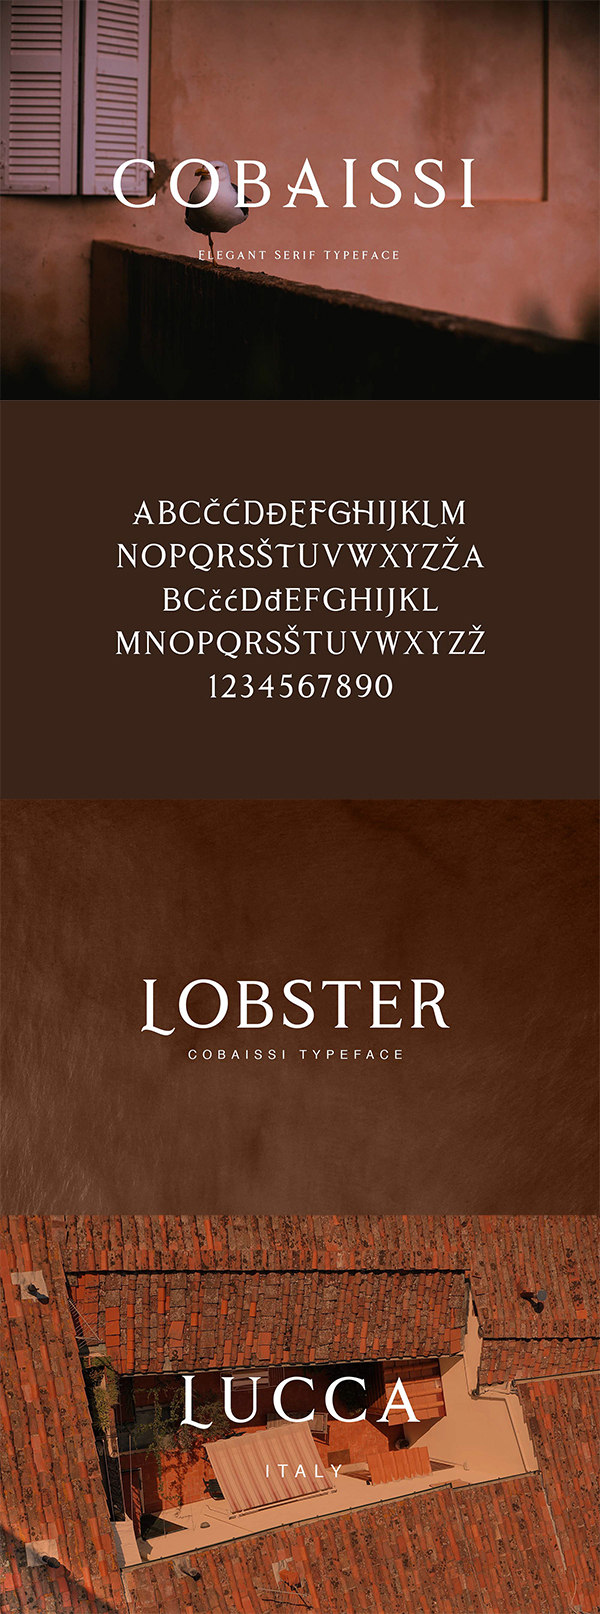 Cobaissi Serif Typeface